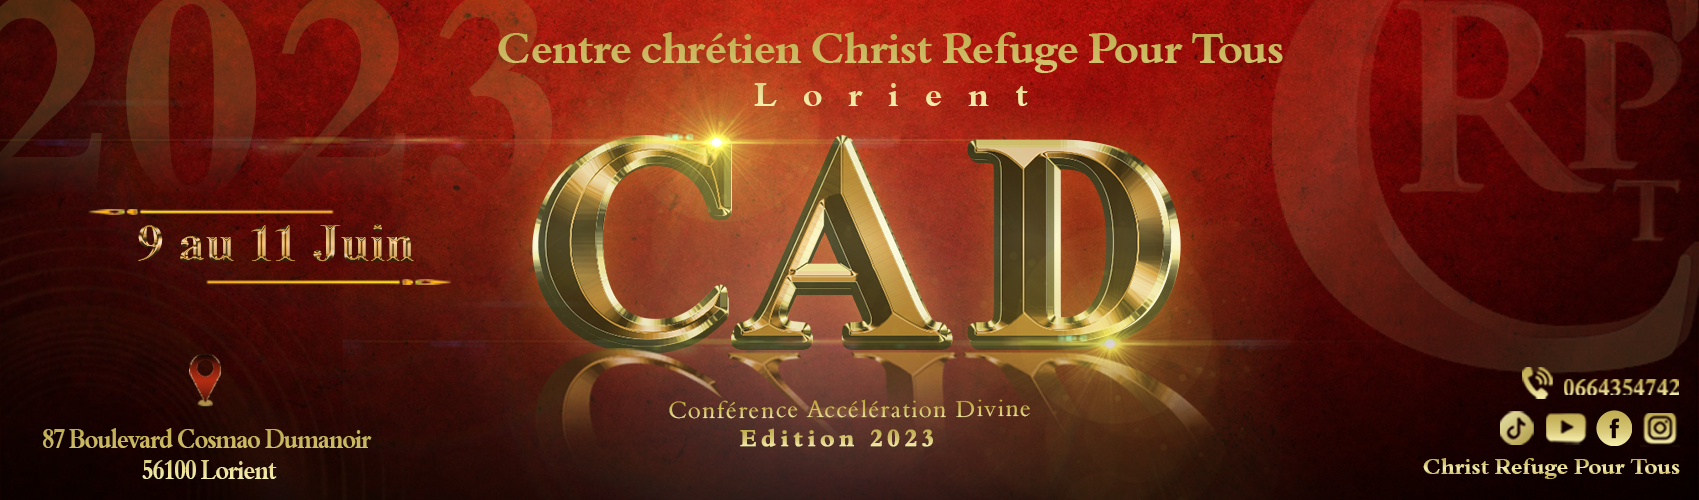 Conférence Accélération Divine - Edition 2023 - Du 9 au 11 Juin à Lorient